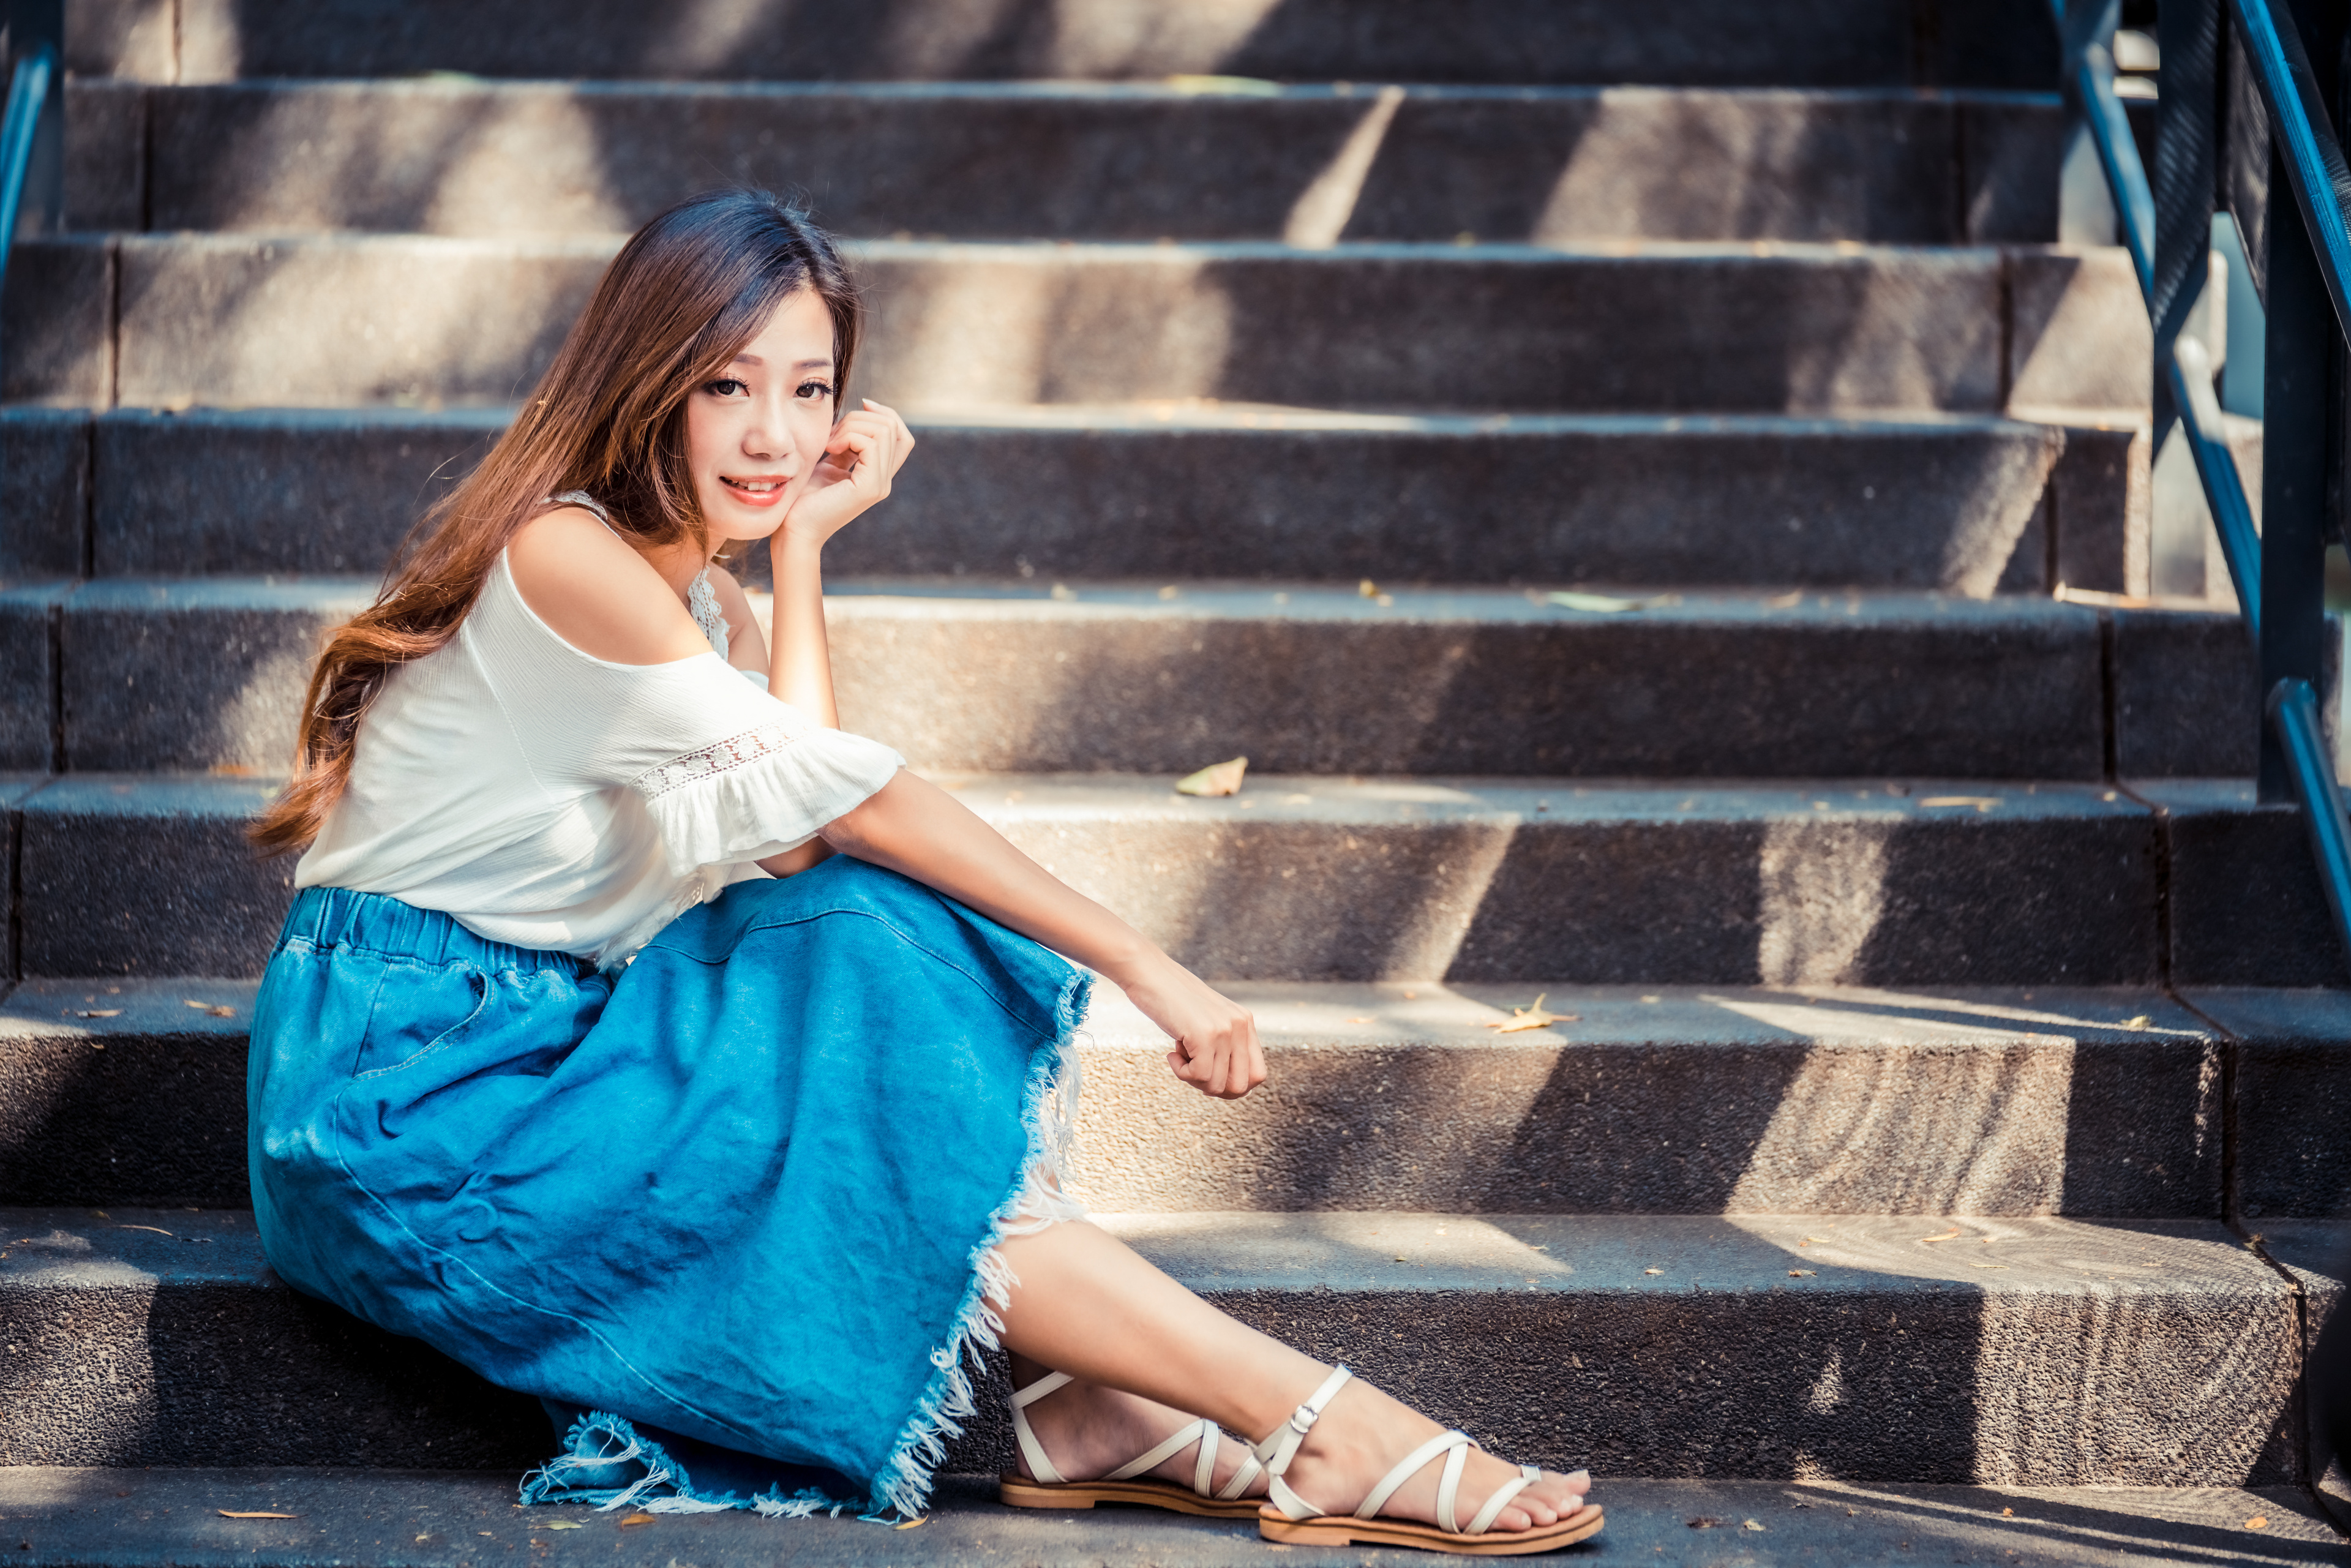 Asian Model Women Long Hair Dark Hair Depth Of Field Stairs Sitting Barefoot Sandal Long Skirt White 3840x2561